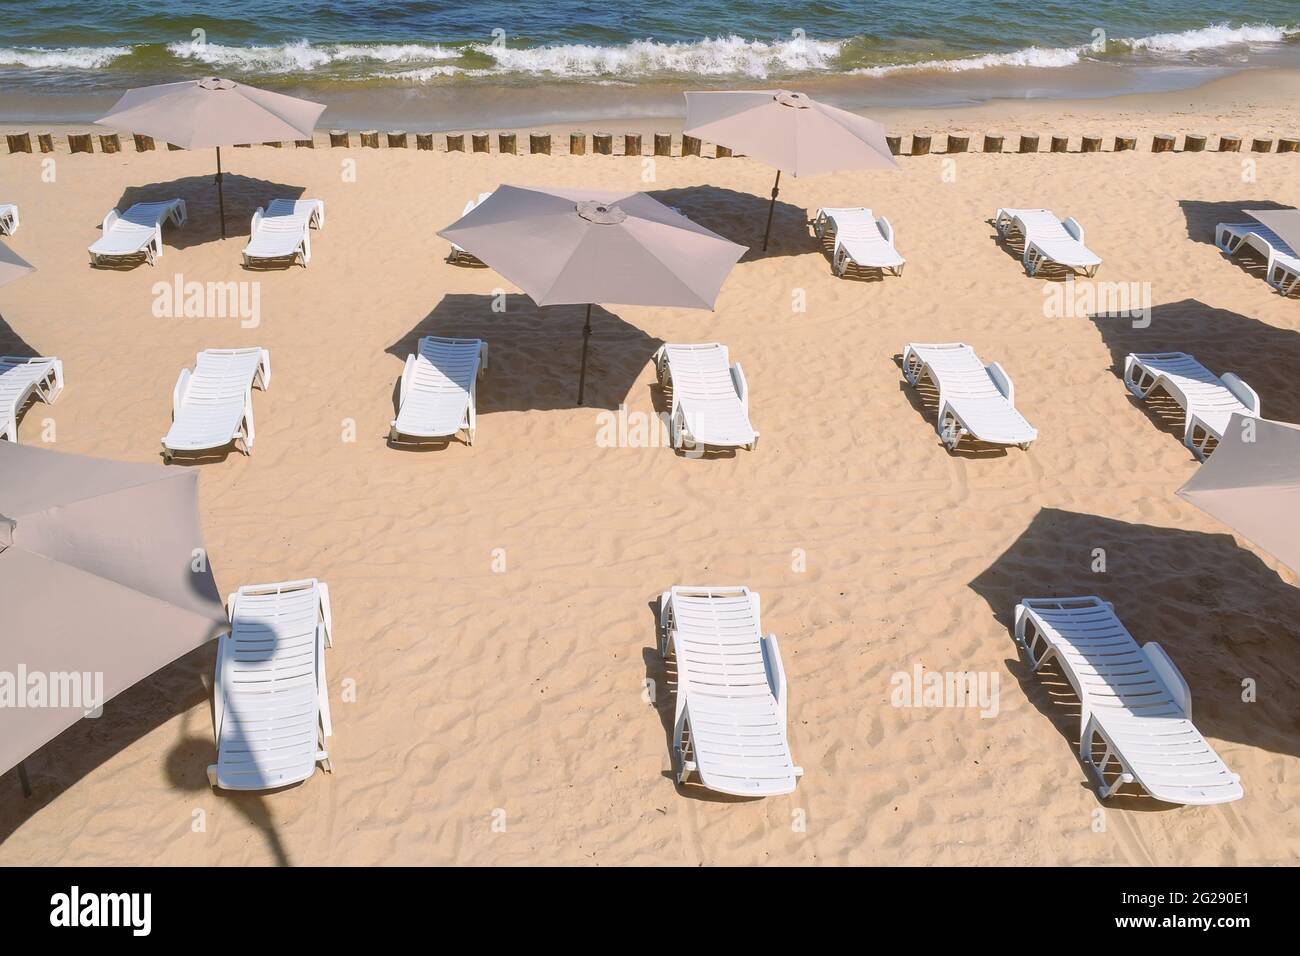 Chaises longues et parasols vides sur une plage de sable. Banque D'Images